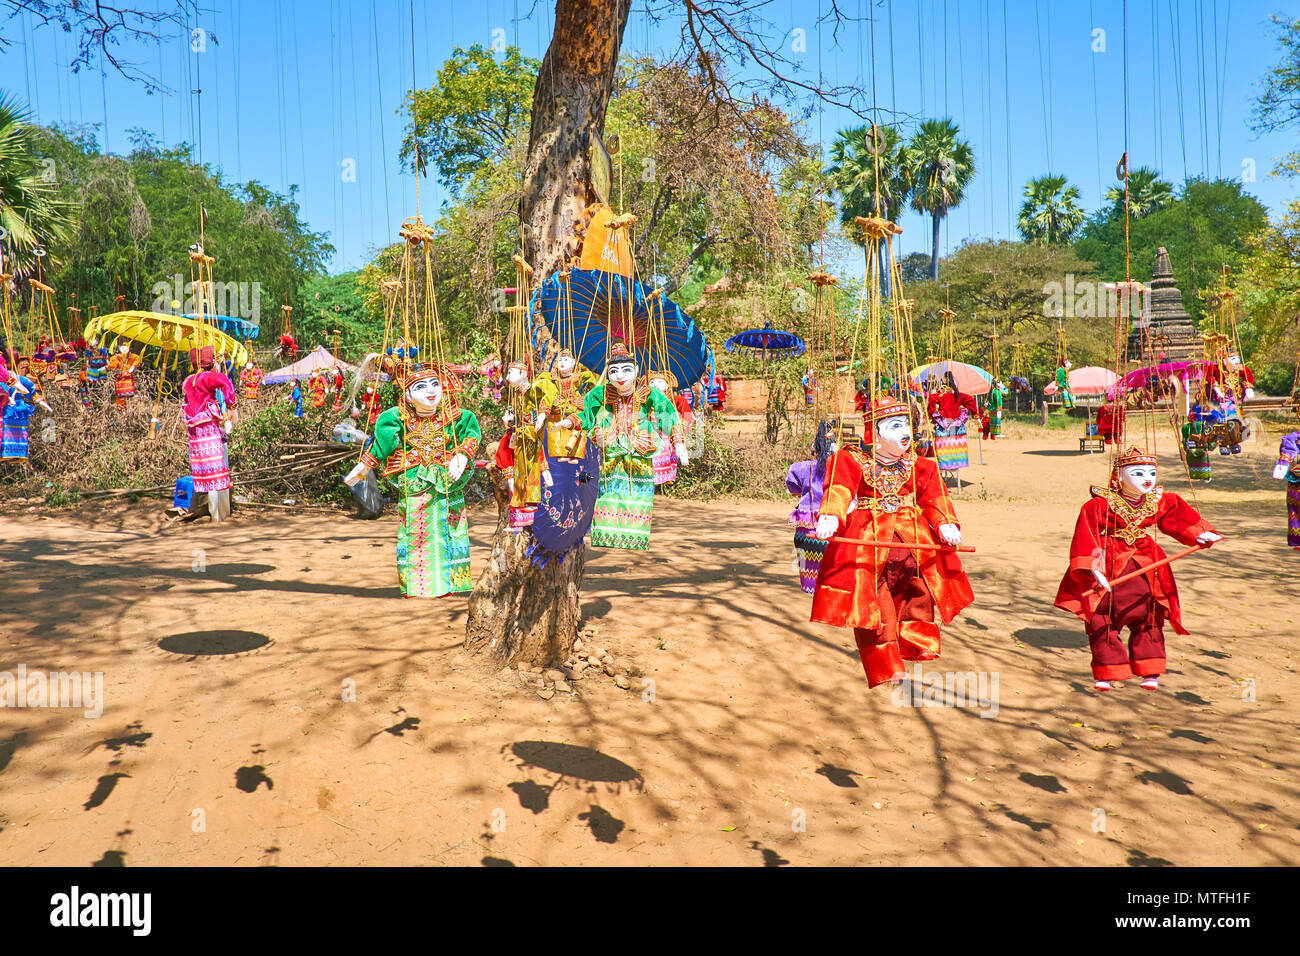 Traditionelle Handarbeit string Marionetten in bunten Kleidern und helle Schirme hängen am Baum und flattern im Wind in archäologische Stätte von alten Beutel Stockfoto